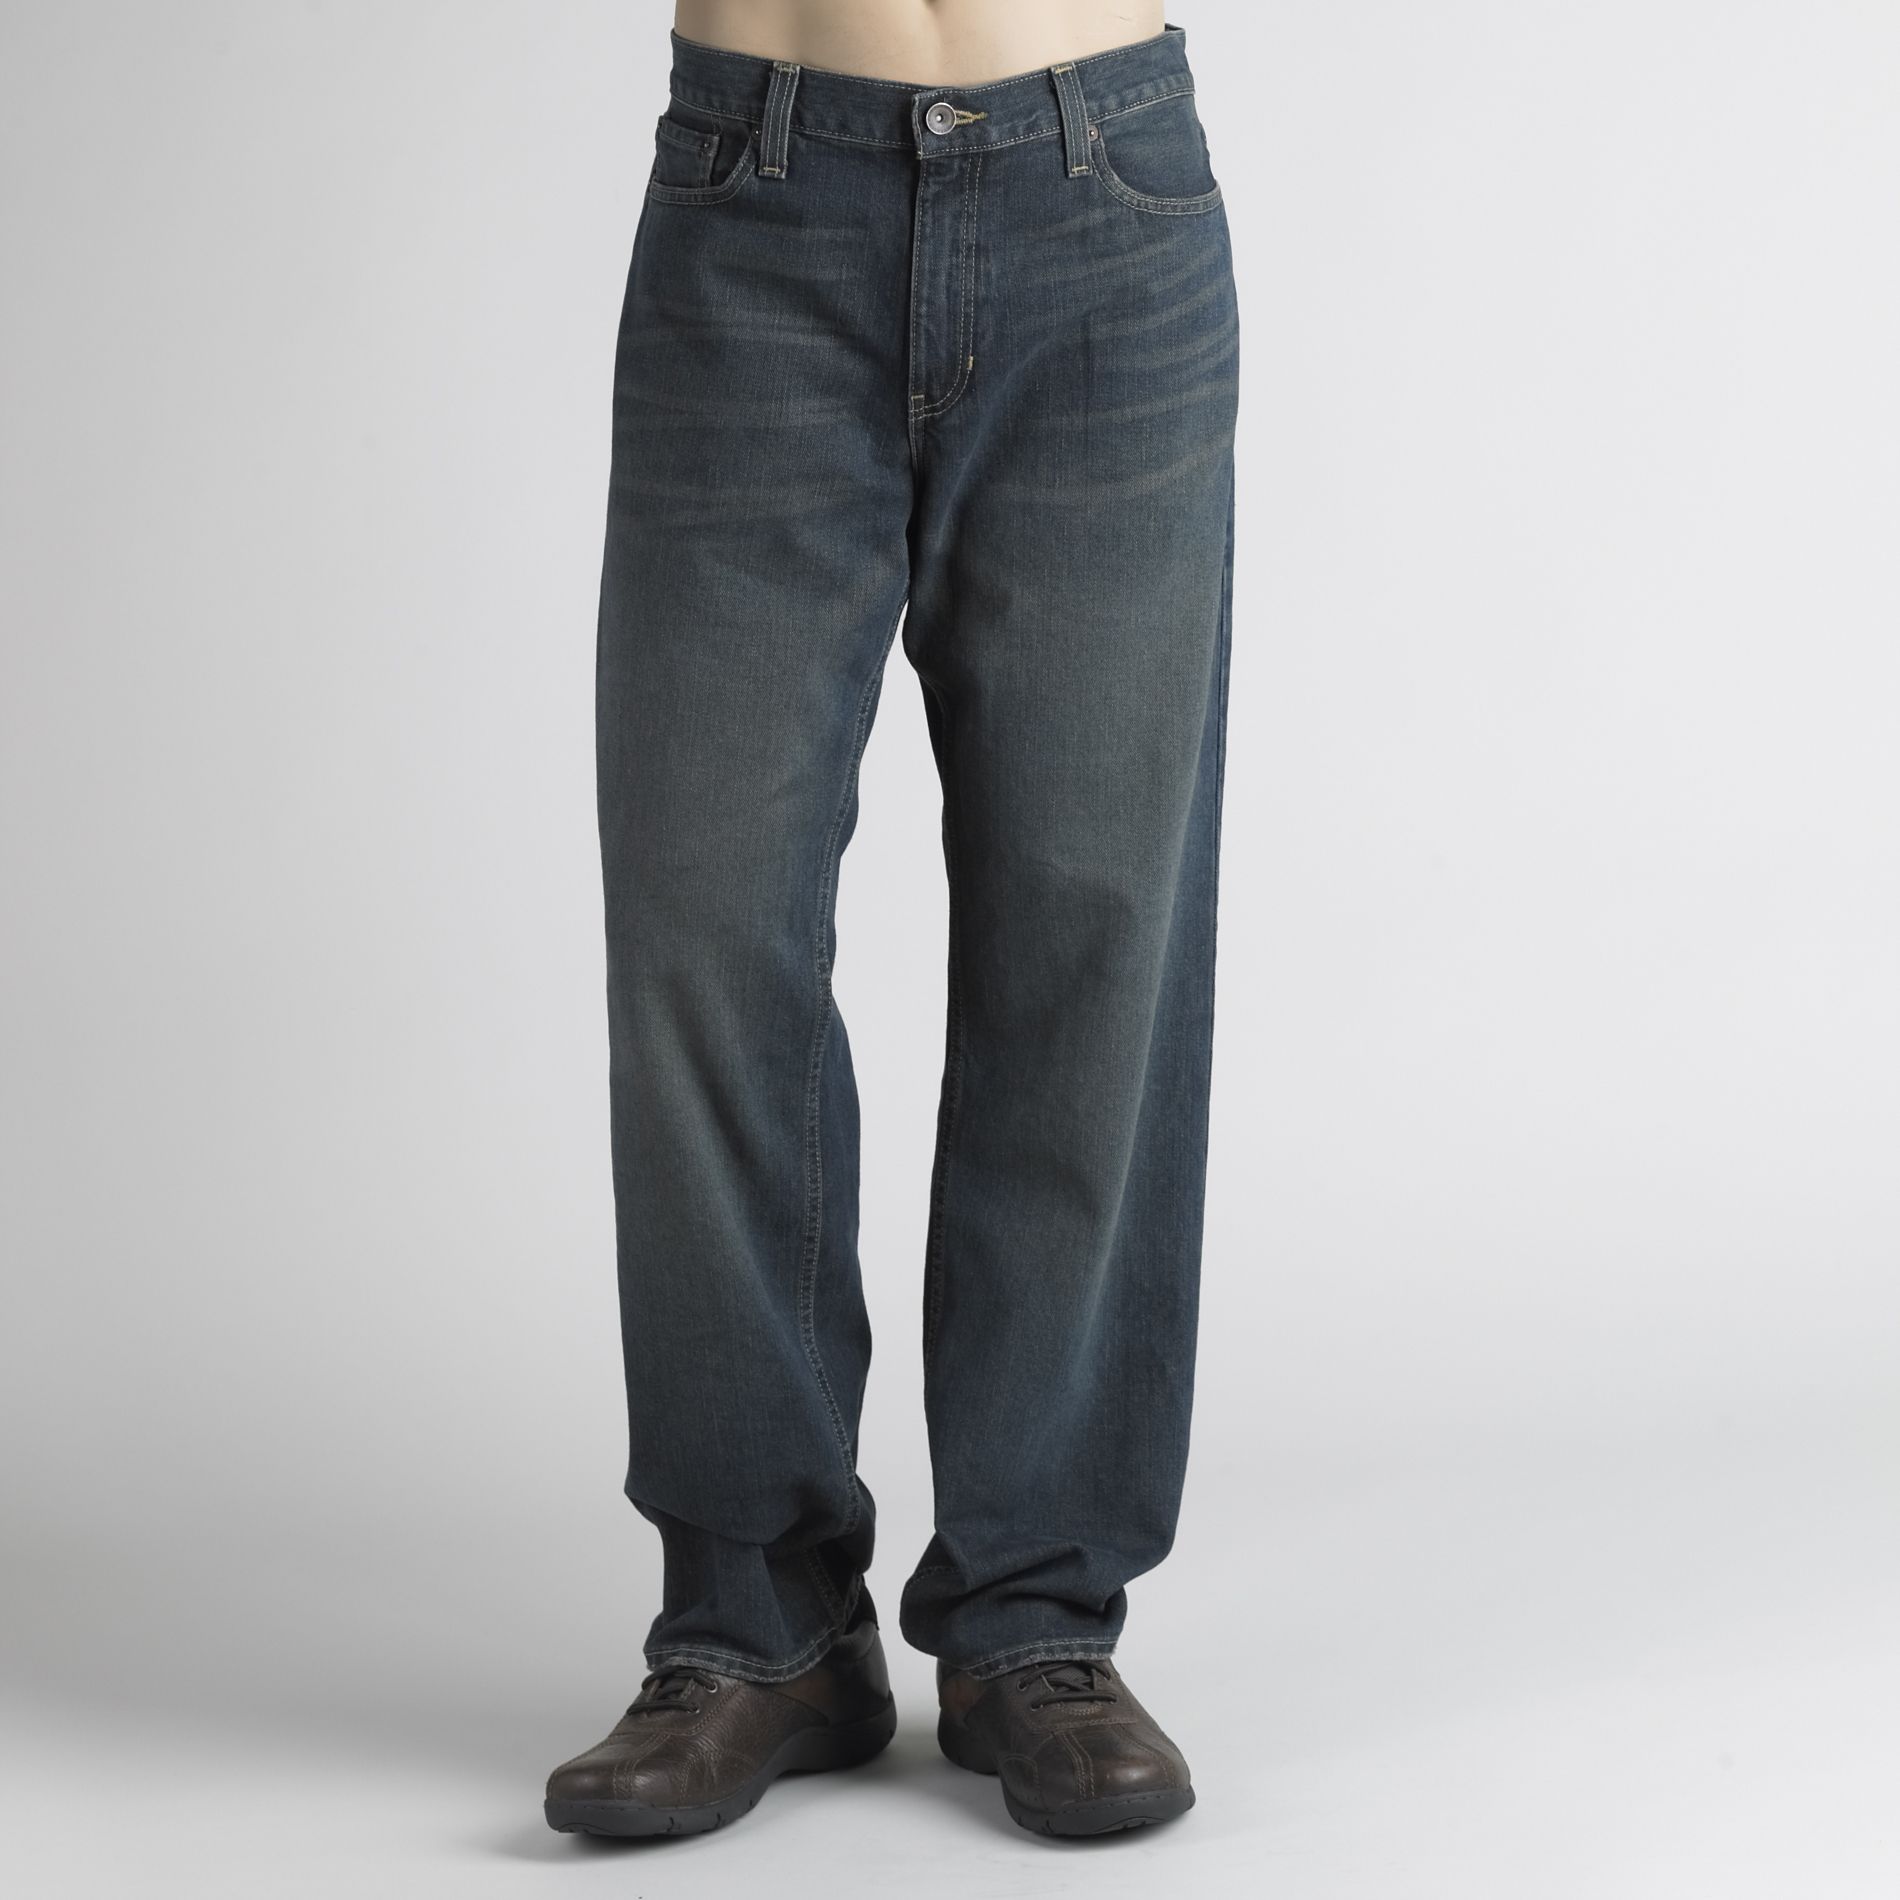 Roebuck & Co. Men's Boot Cut Denim Jeans | Shop Your Way: Online ...